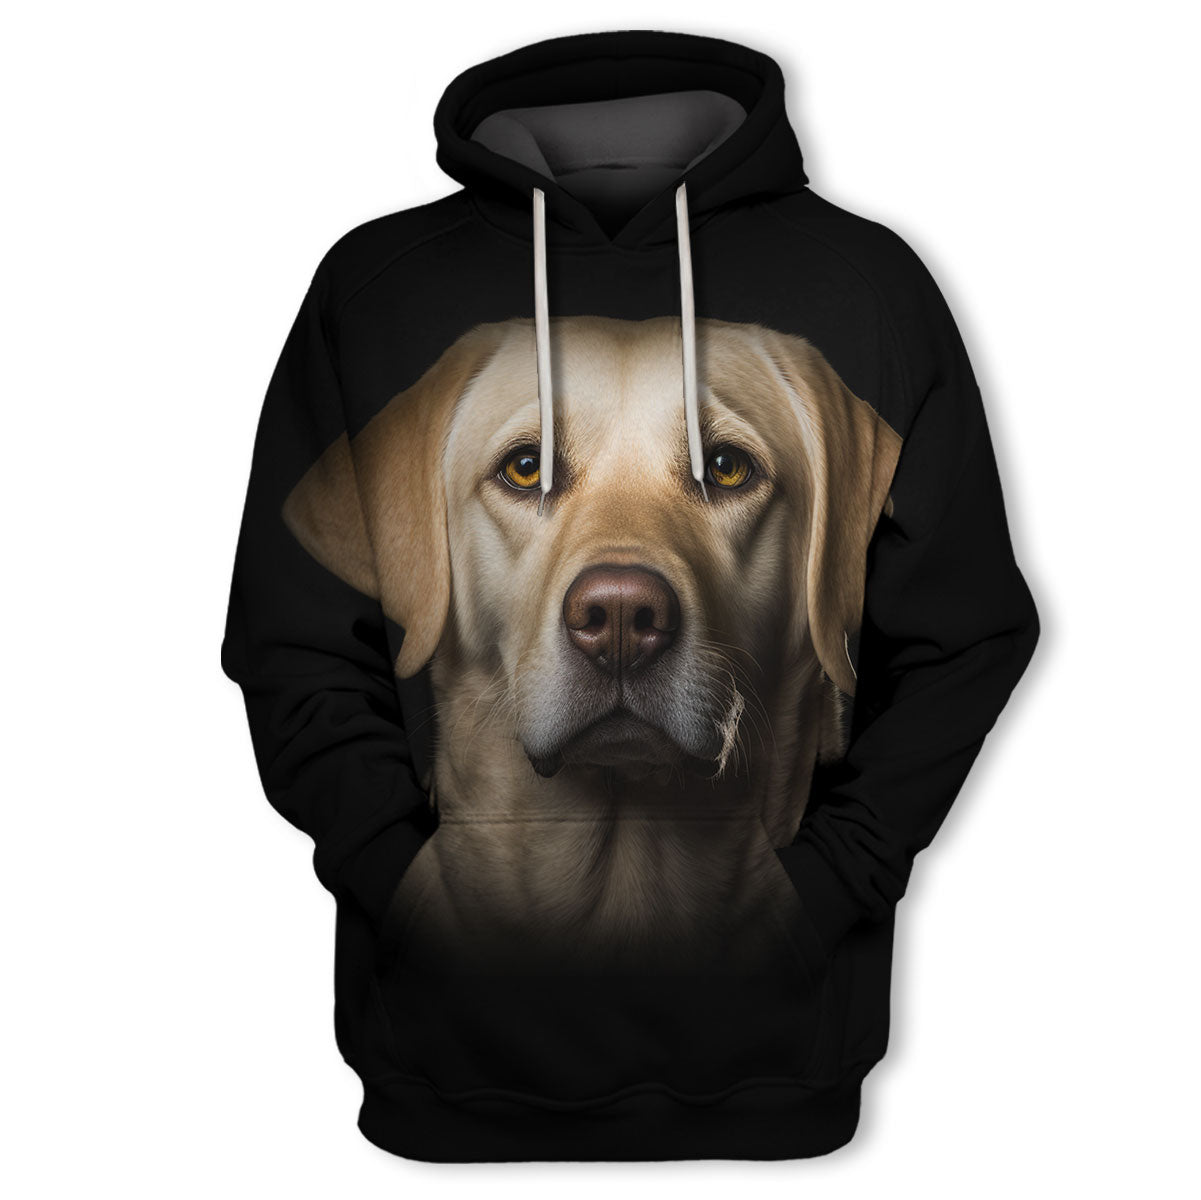 Labrador Retriever 2 - Unisex 3D Graphic Hoodie